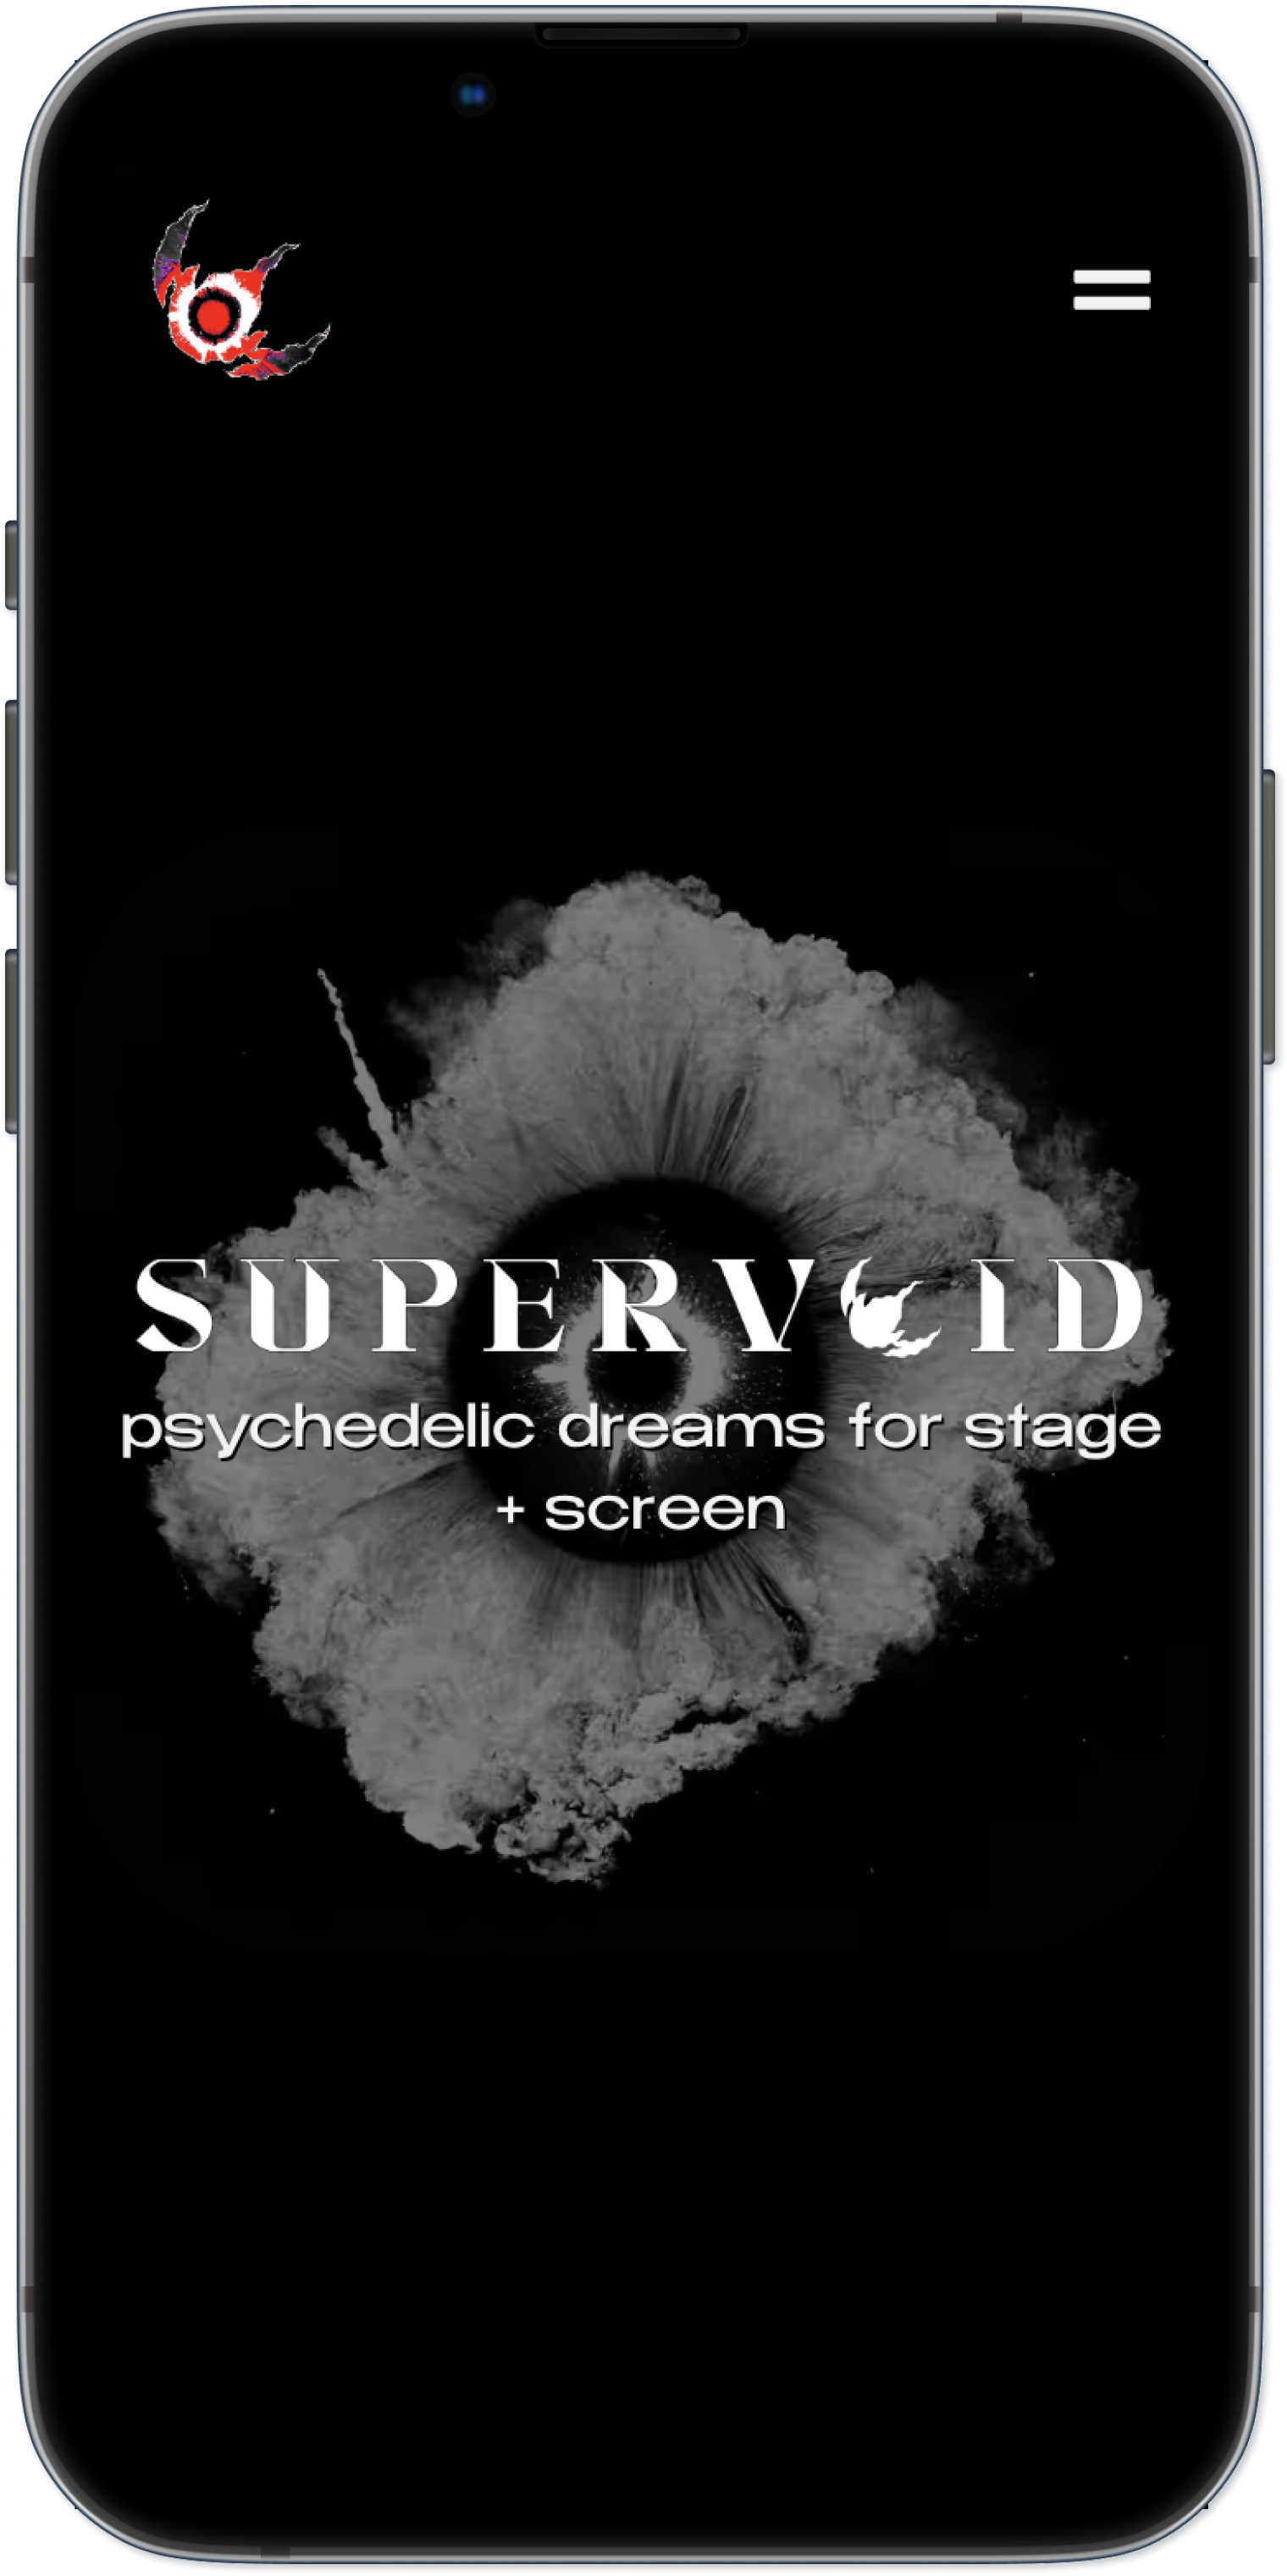 Supervoid website on a mobile device